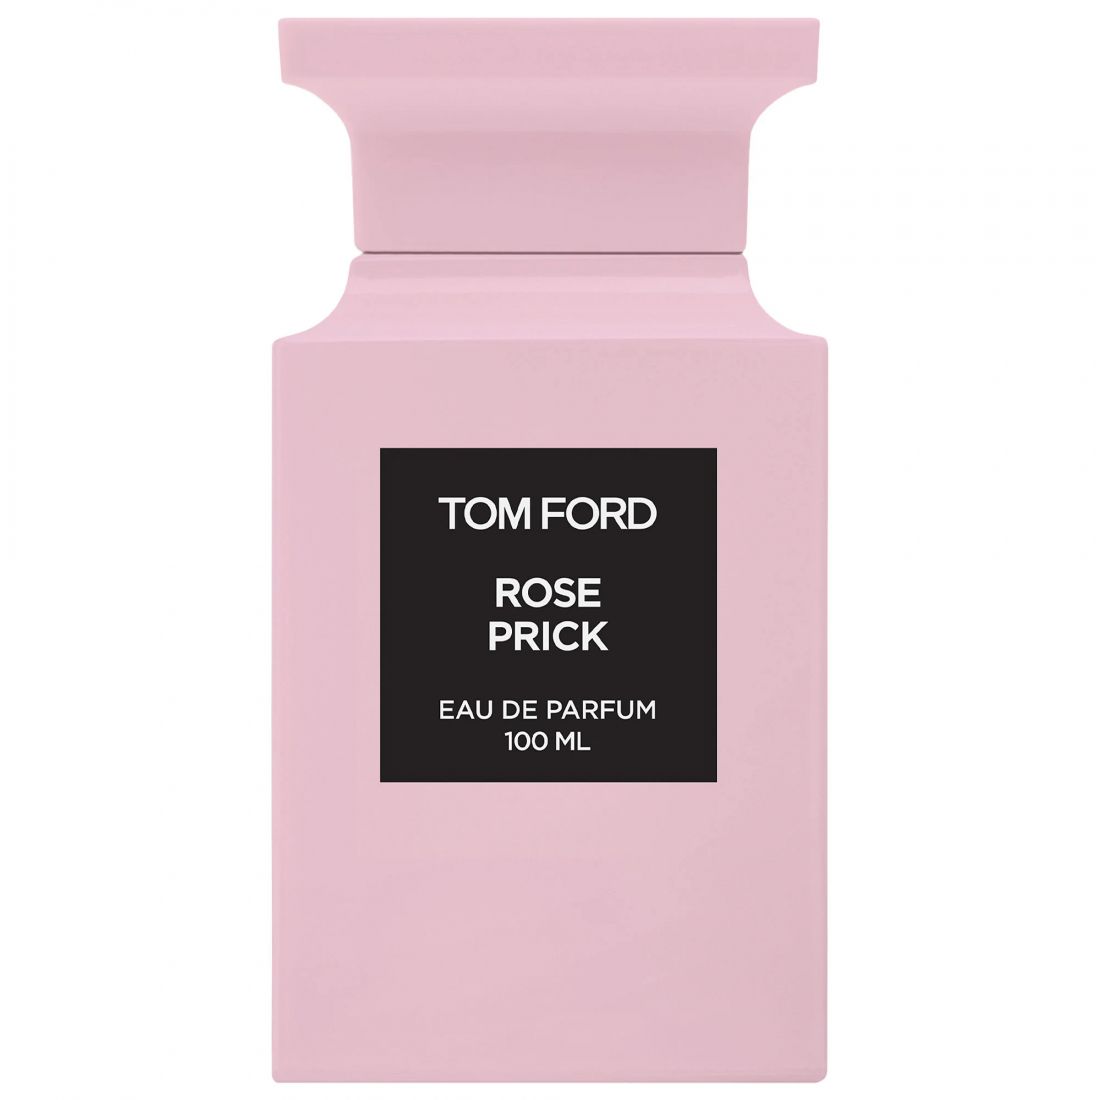 Tom Ford - Eau de parfum 'Rose Prick' - 100 ml